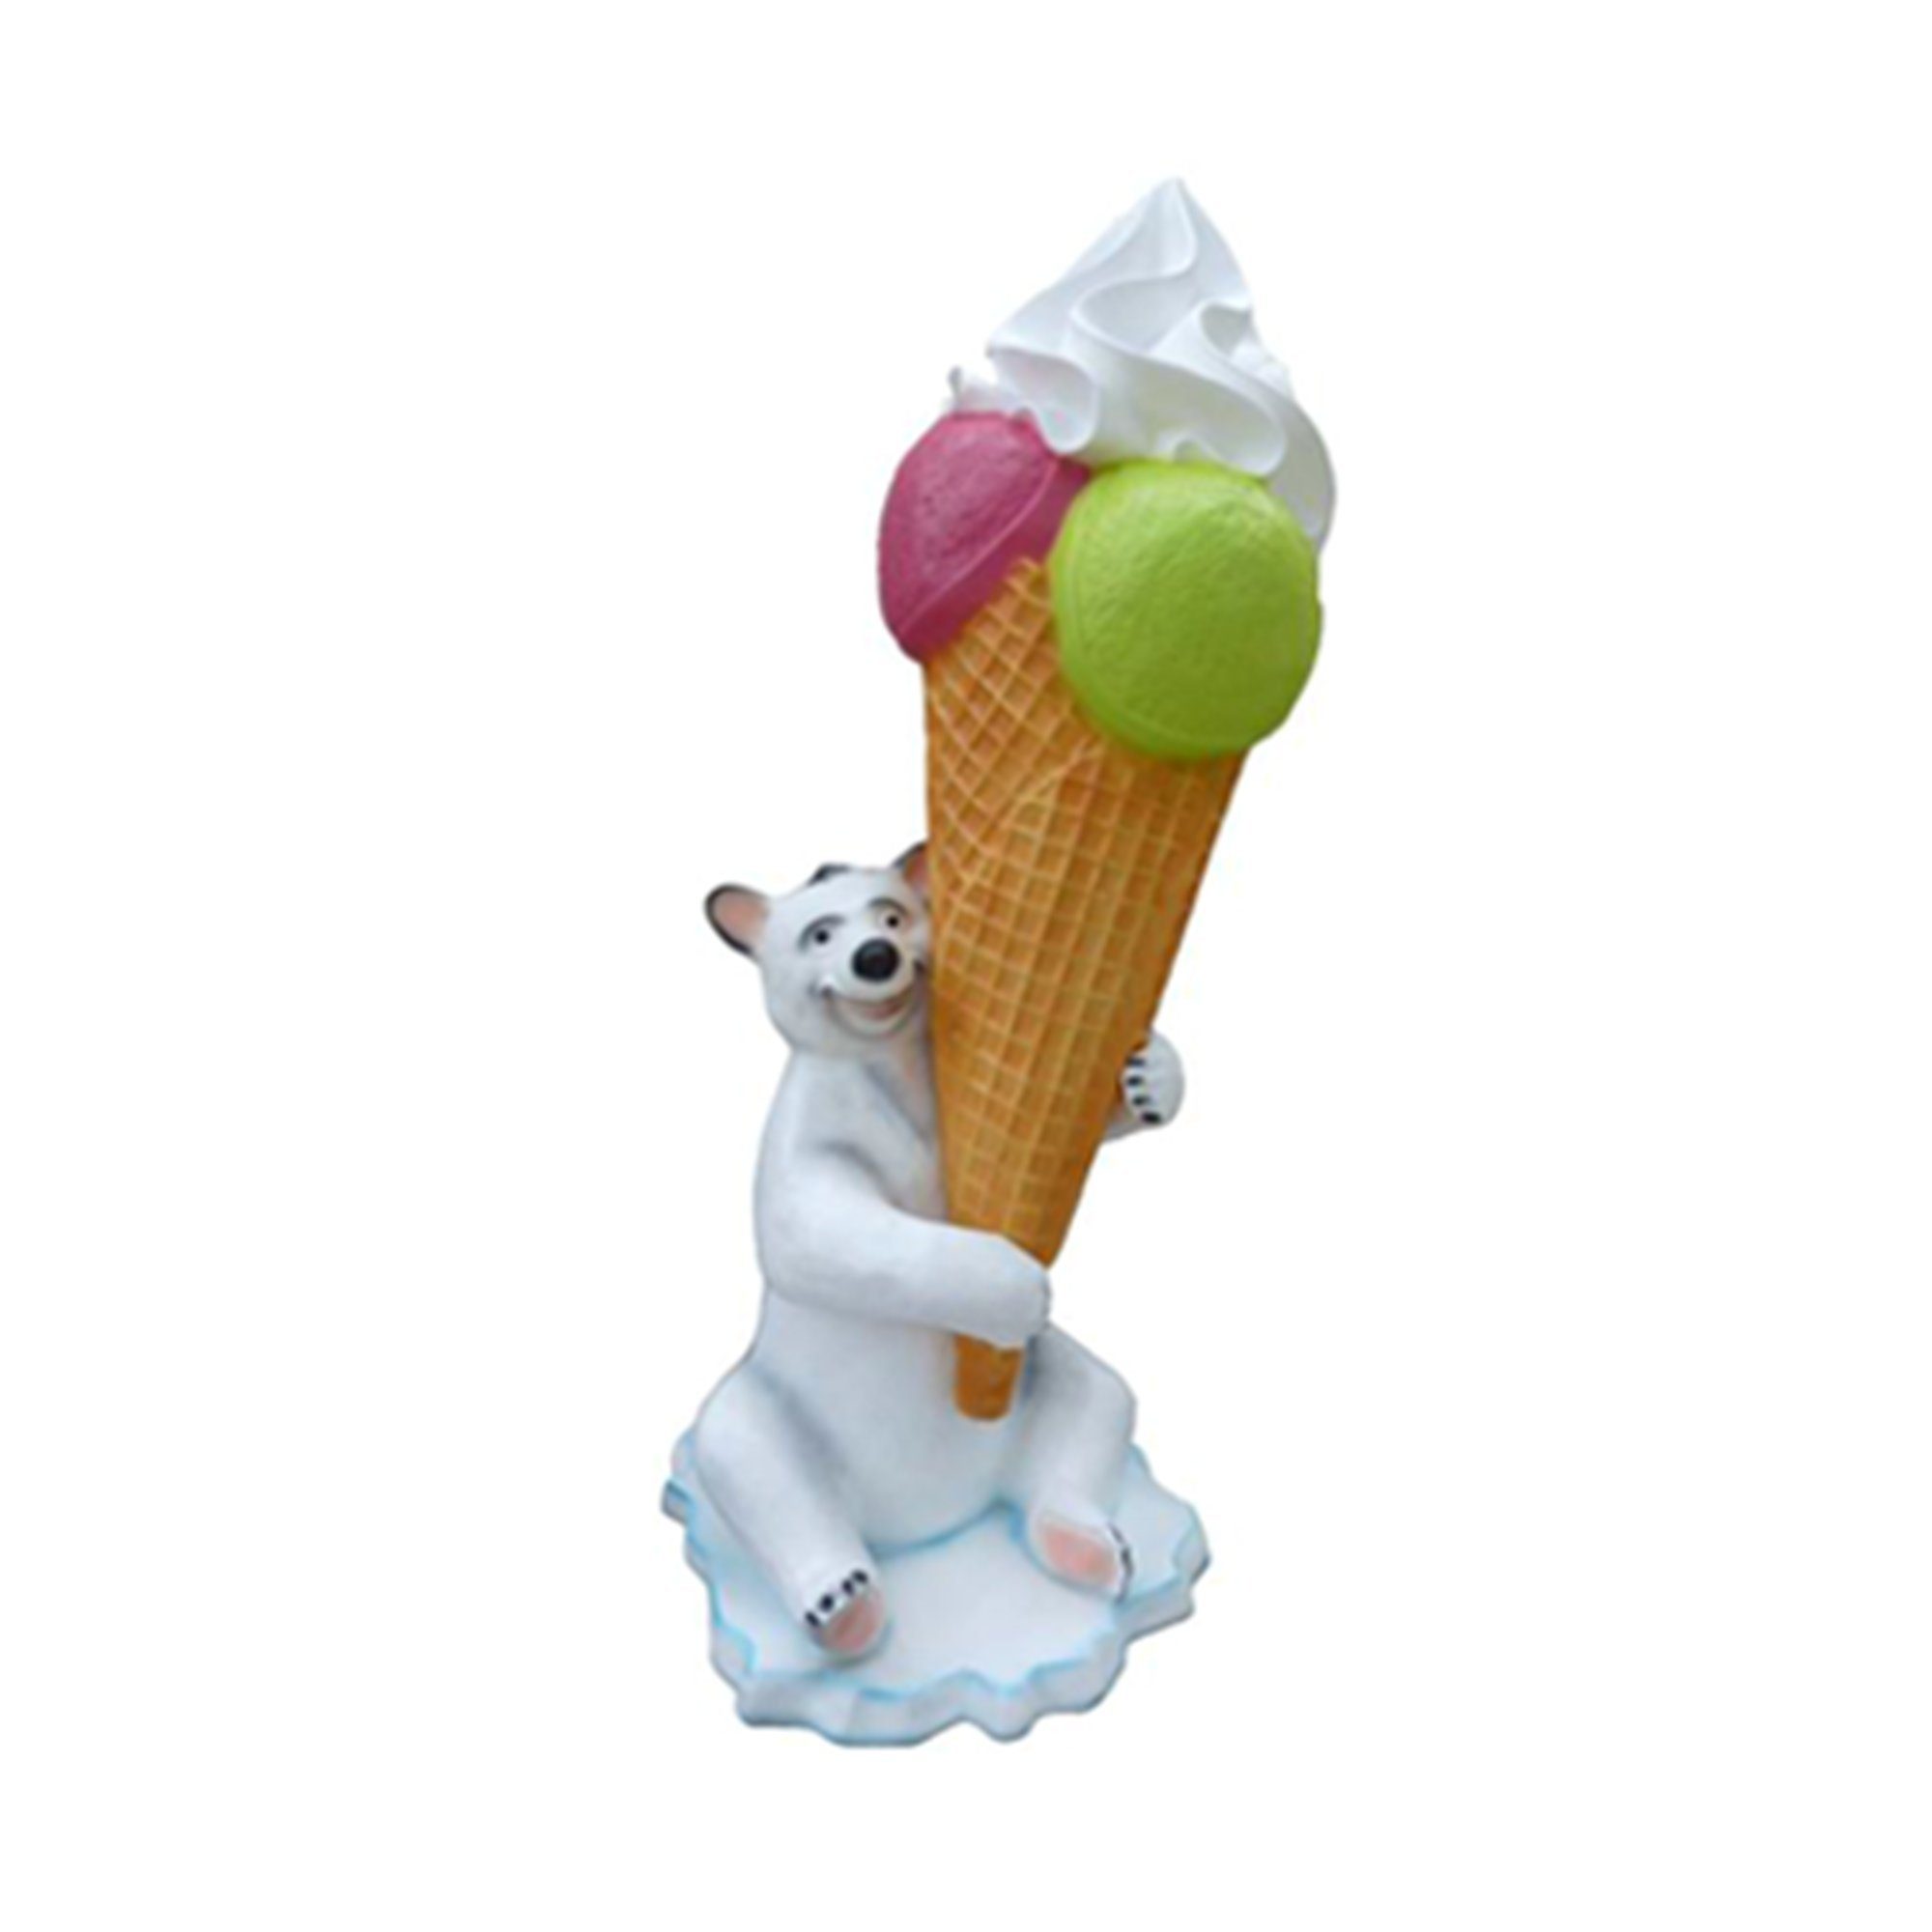 JVmoebel Gartenfigur, Ice Cream Figure Aufsteller Eisdiele Restaurant Gastronomie Statuen